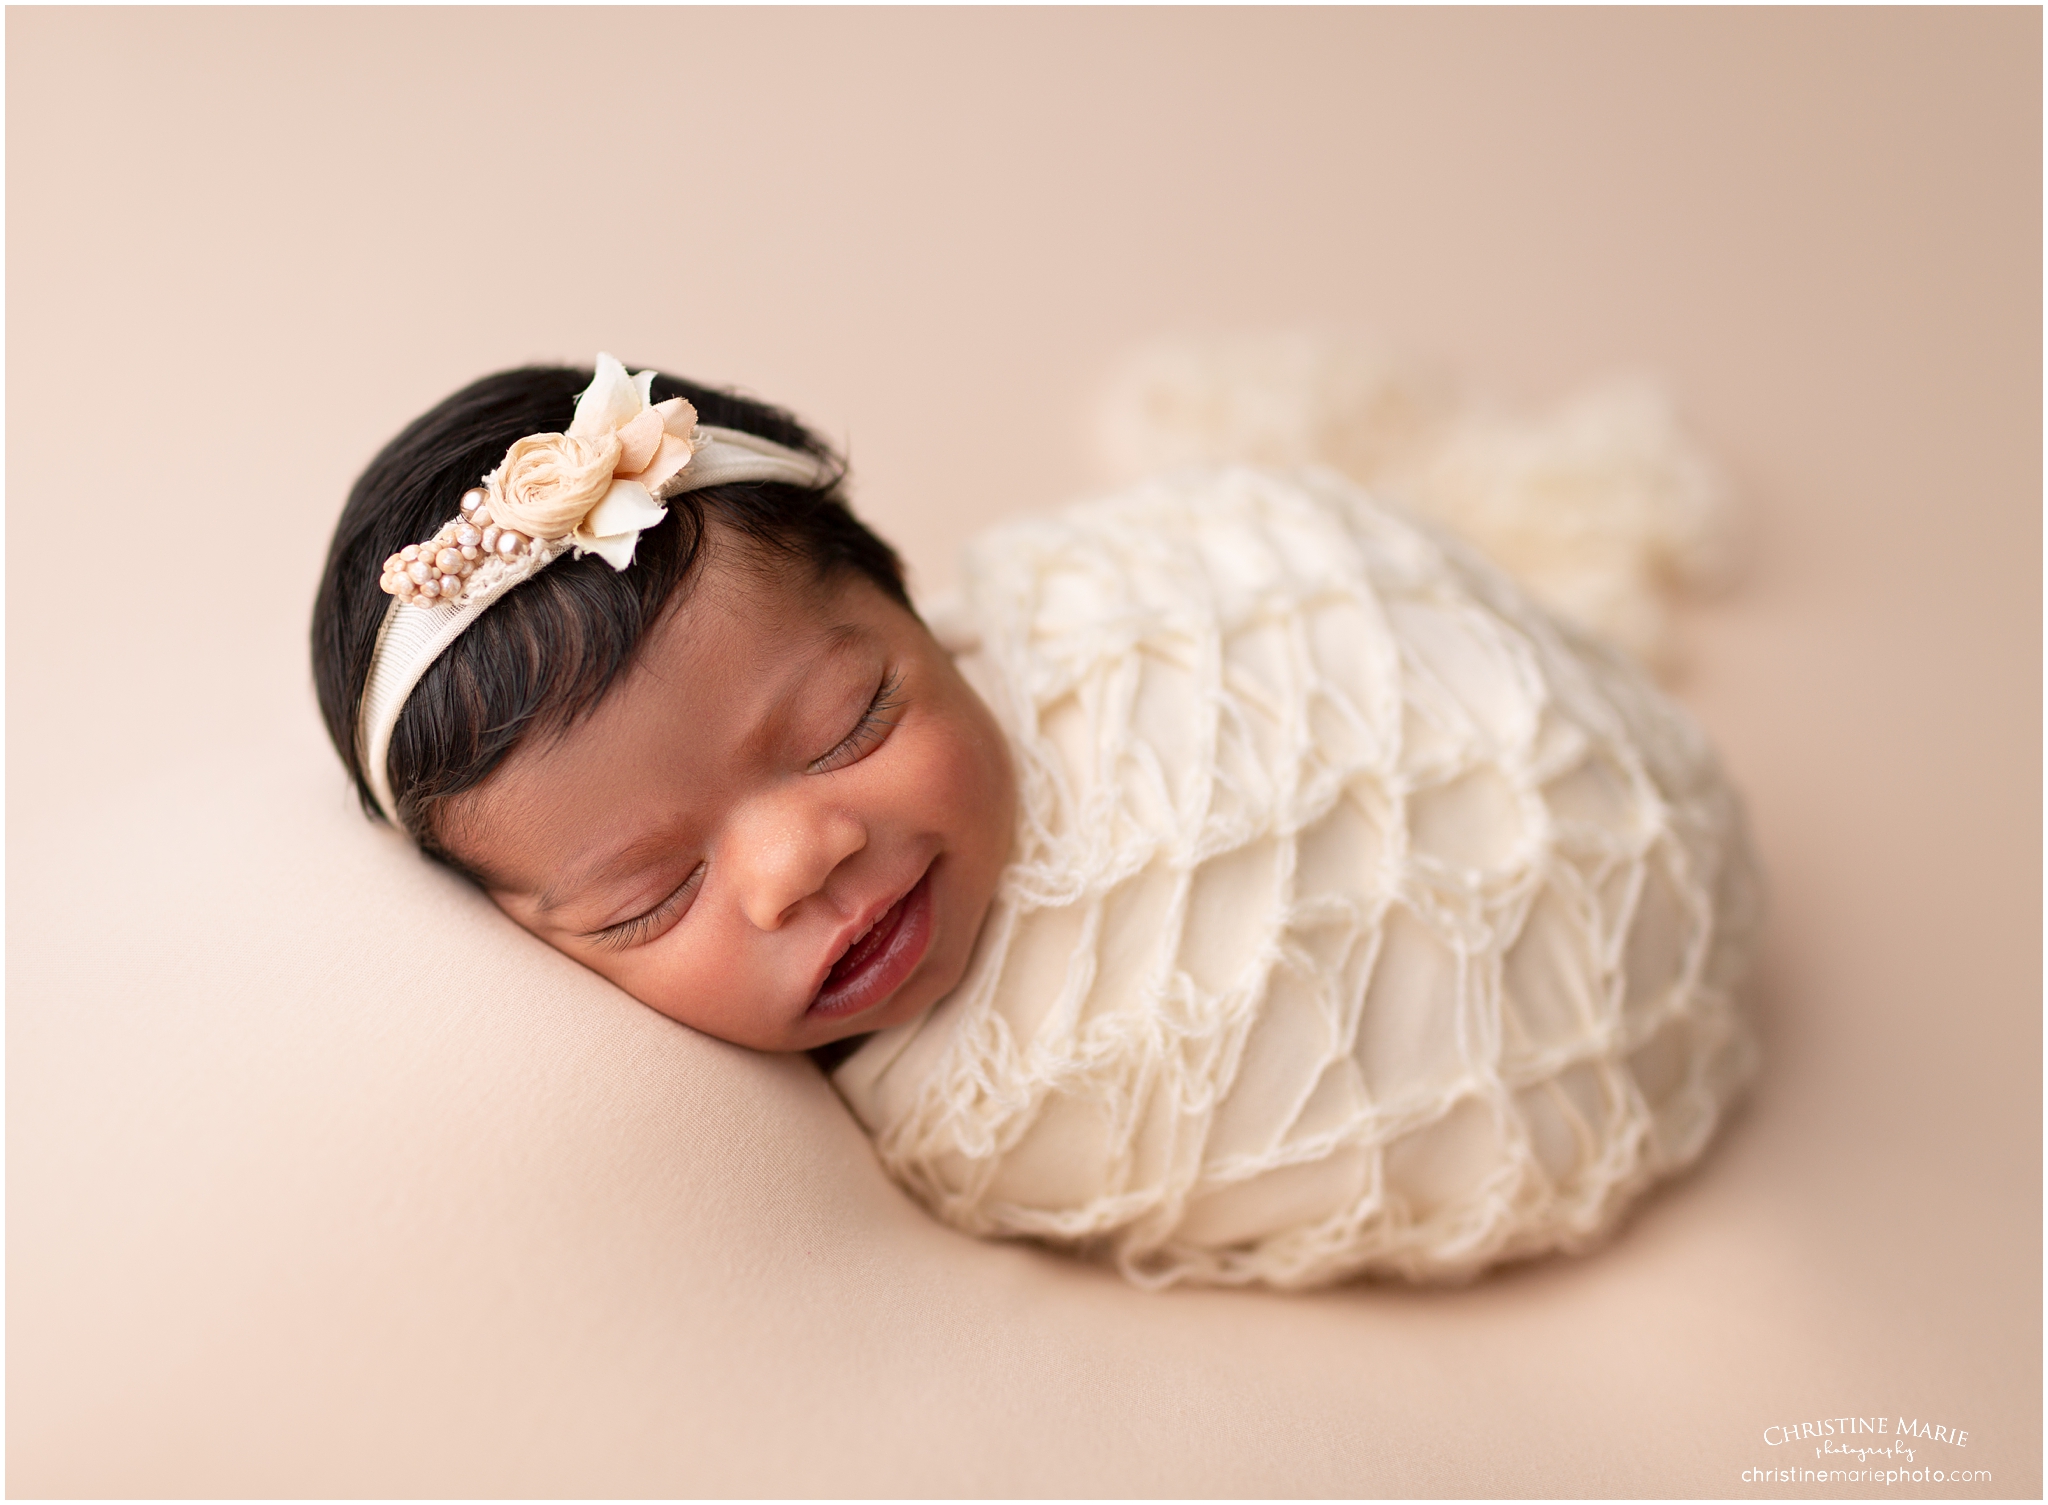 cumming studio newborn photographer, christine marie photography